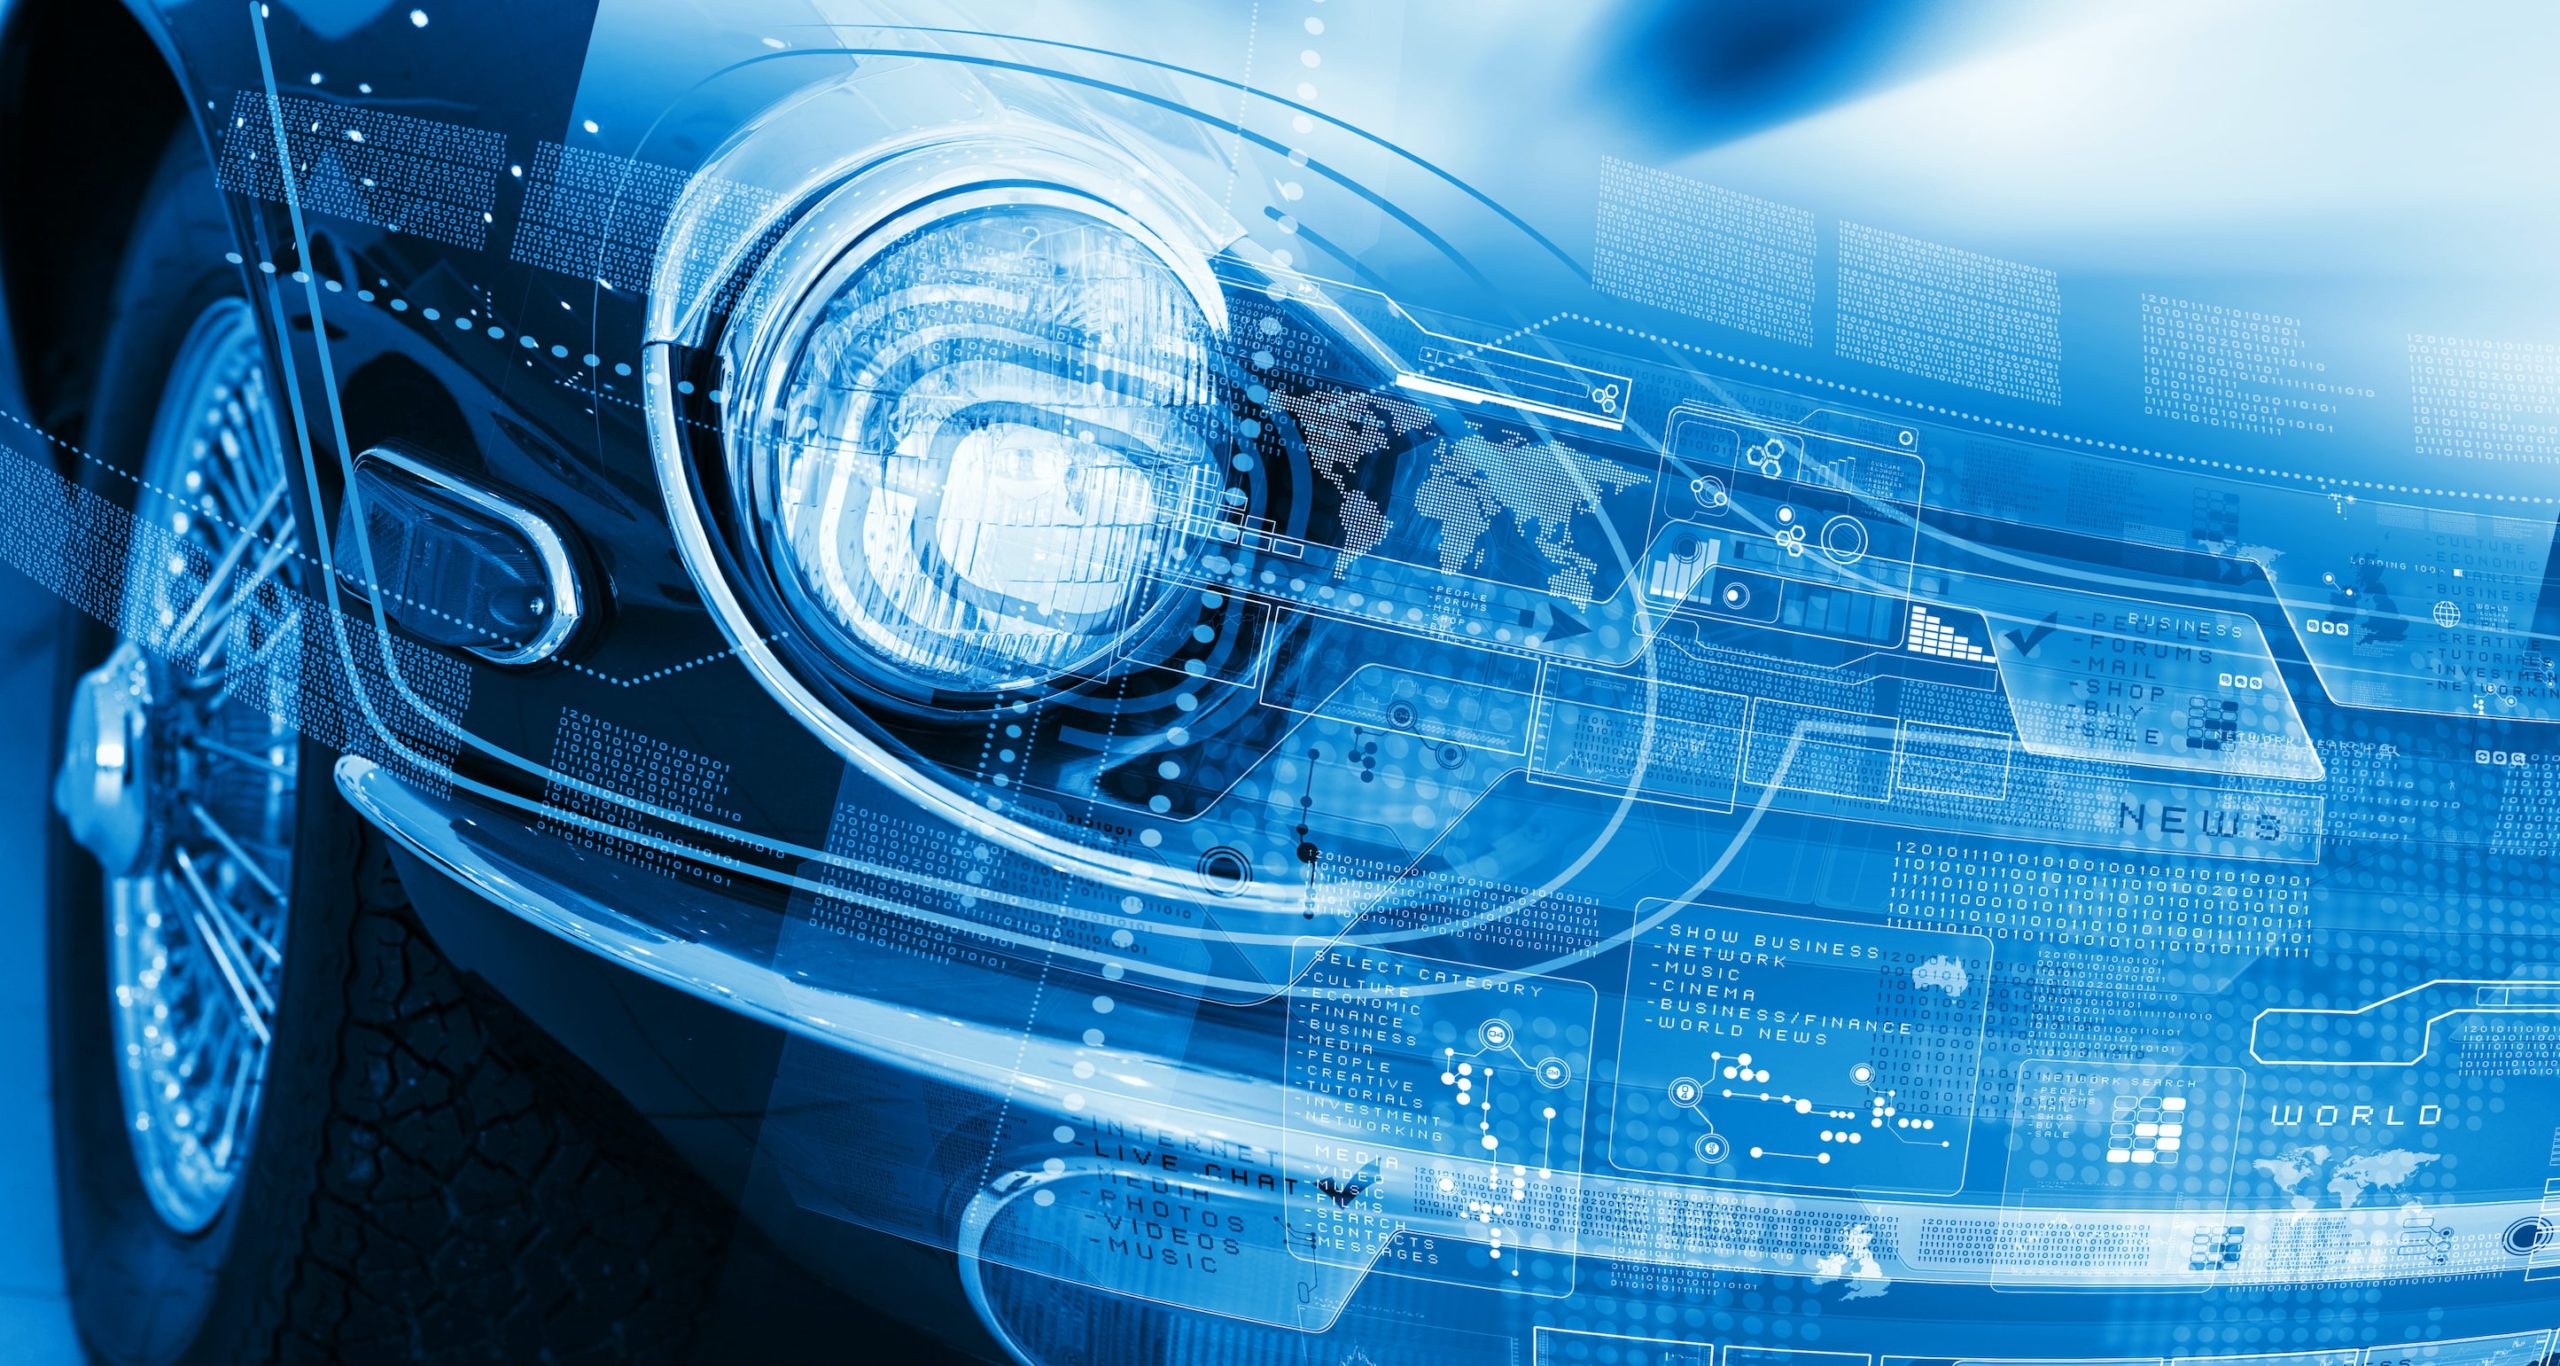 【汽车安全】高级自动驾驶车辆功能安全和网络安全管理的接口